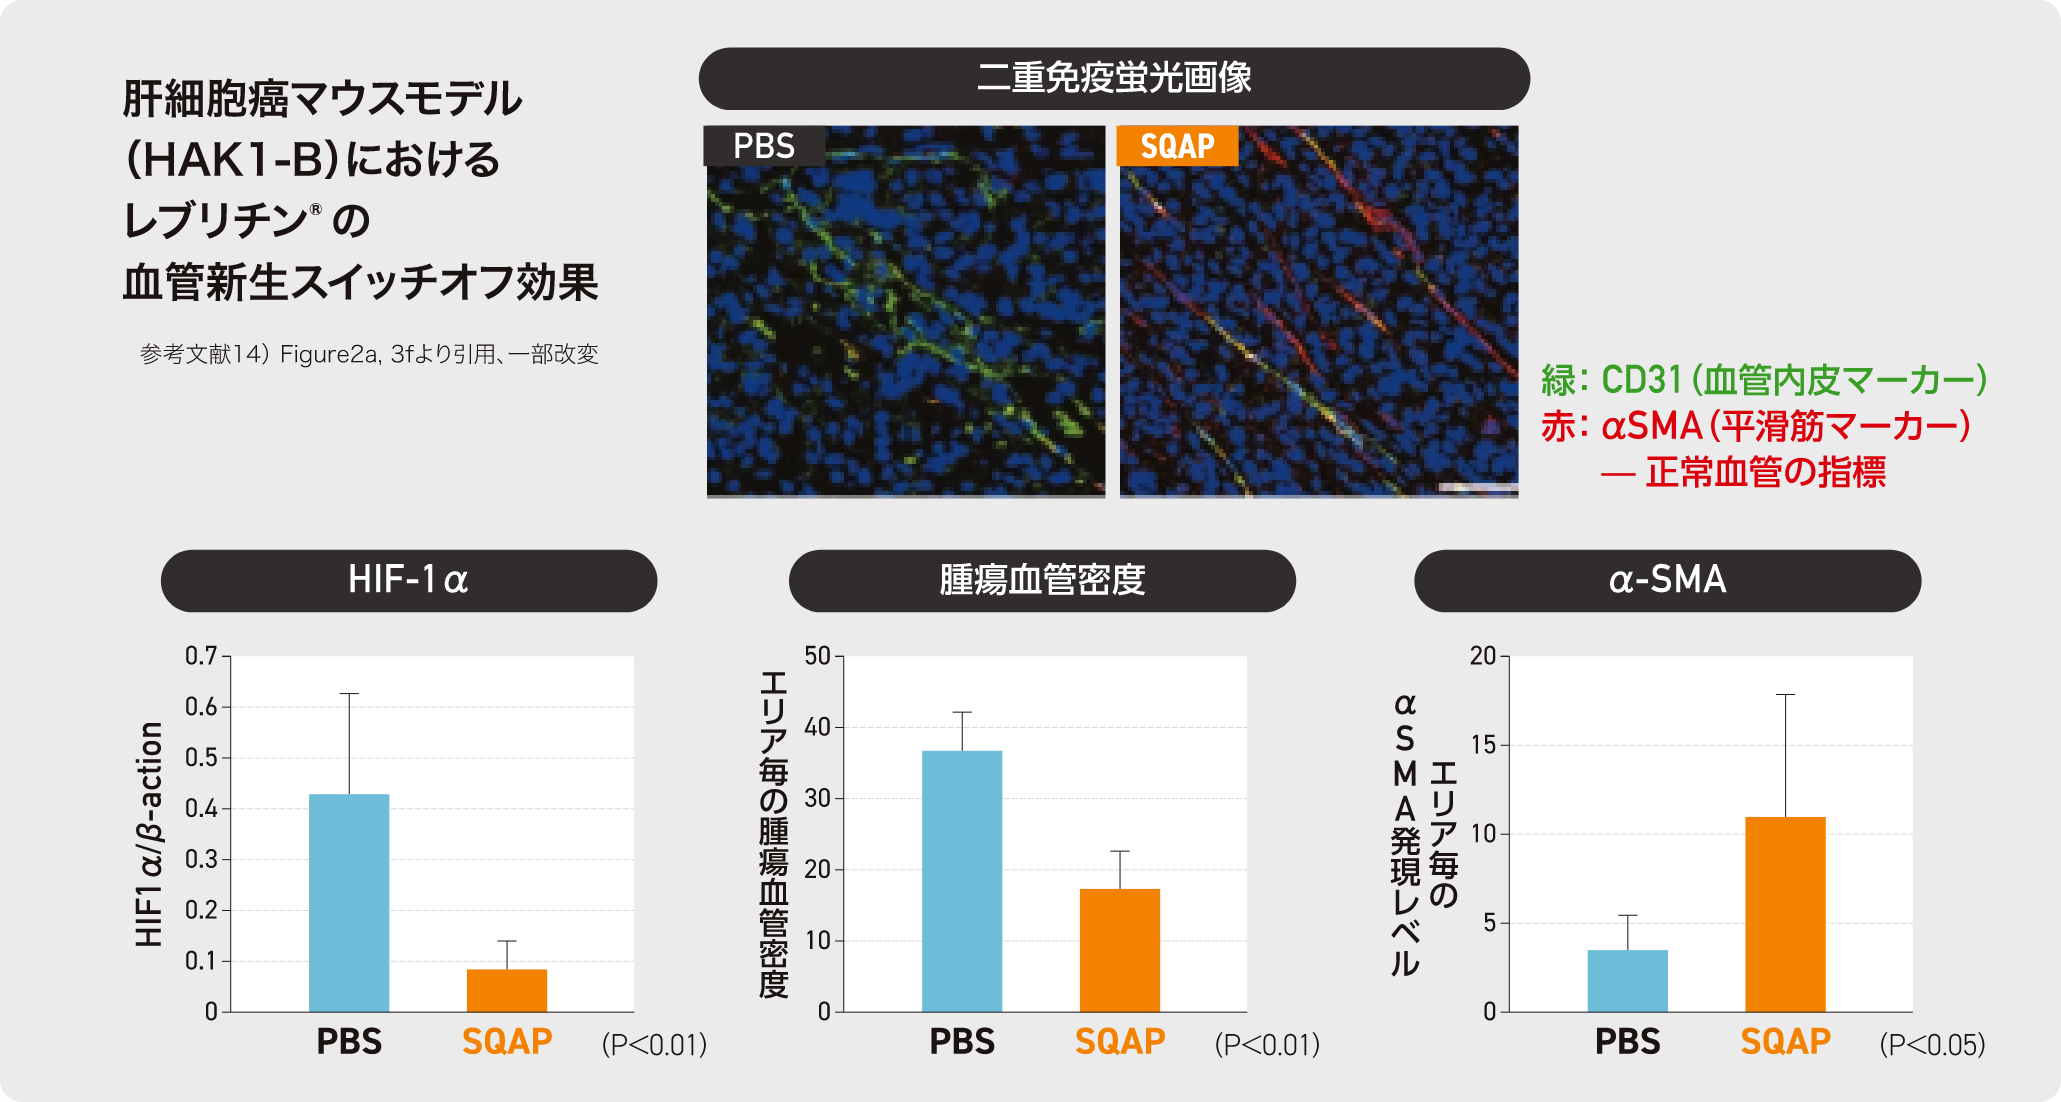 肺細胞癌マウスモデル(HAK1-B)におけるレブリチンの血管新生スイッチオフ効果